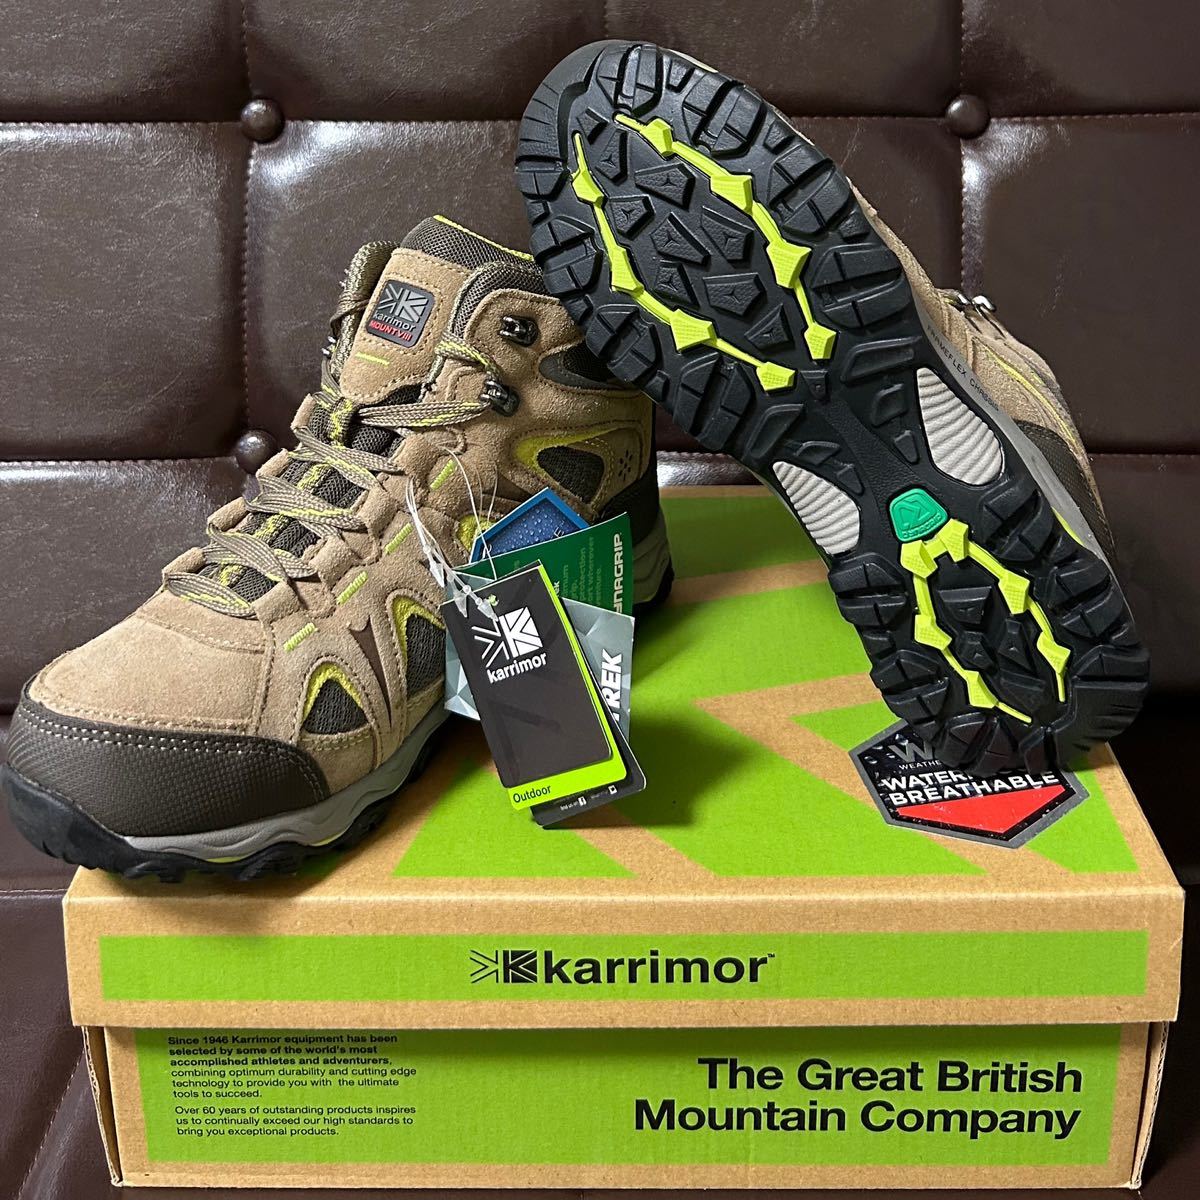  new goods!Karrimor Karrimor Mount Mid Ladies8 original leather waterproof trekking shoes 24cm taupe / green WEATHERTITE waterproof DYNAGRIP sole 